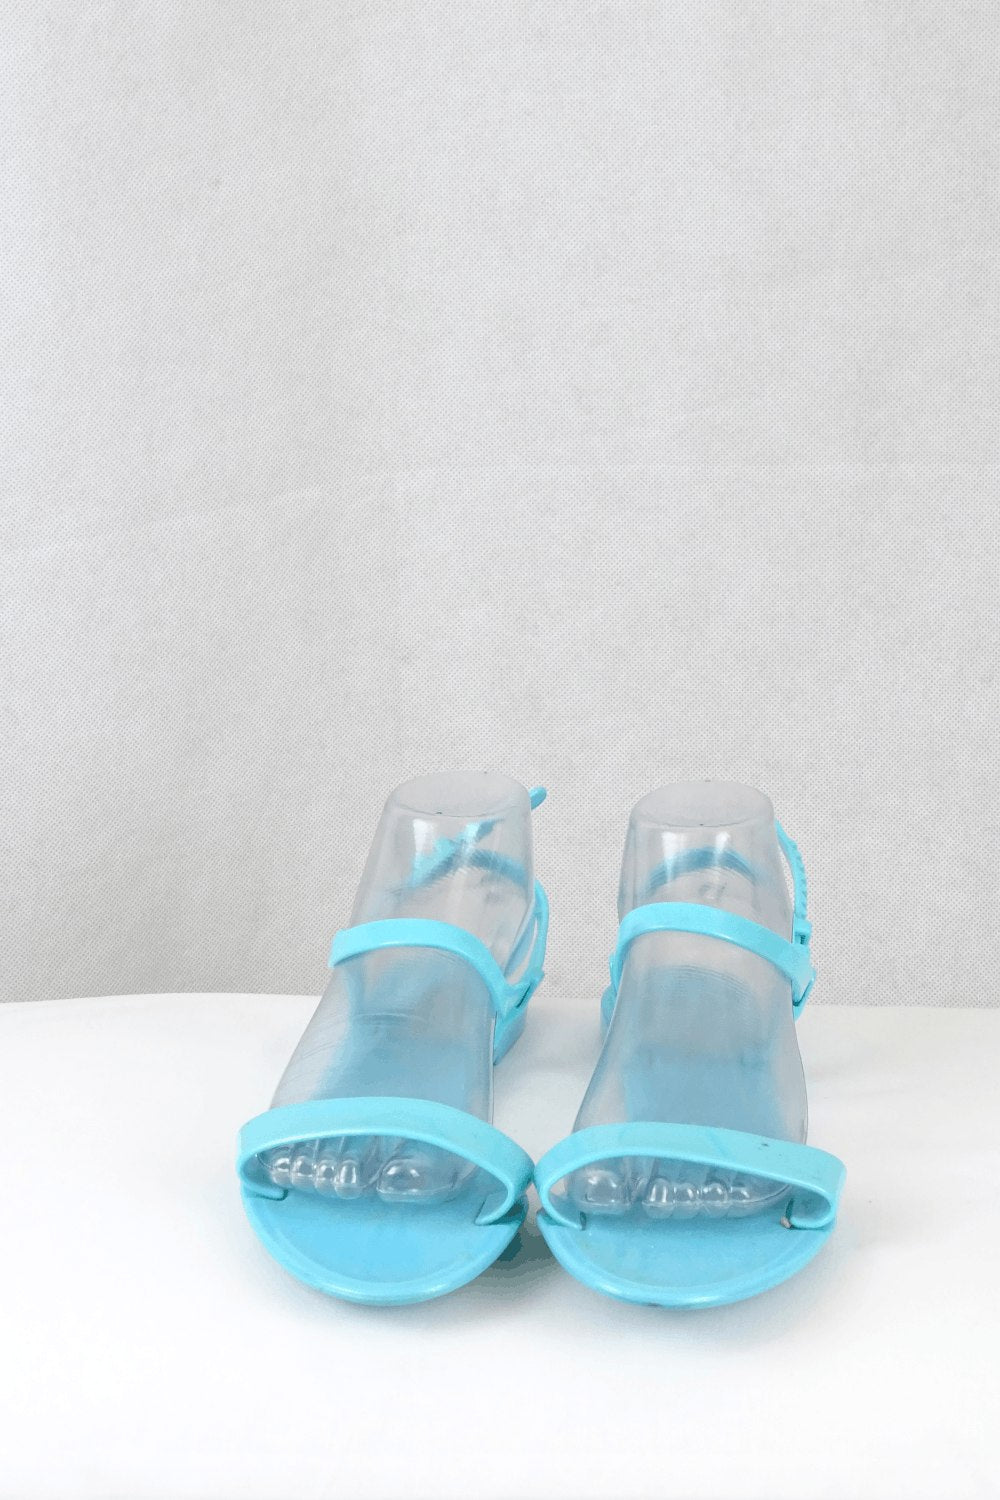 Billabong Blue Plastic Sandals 40